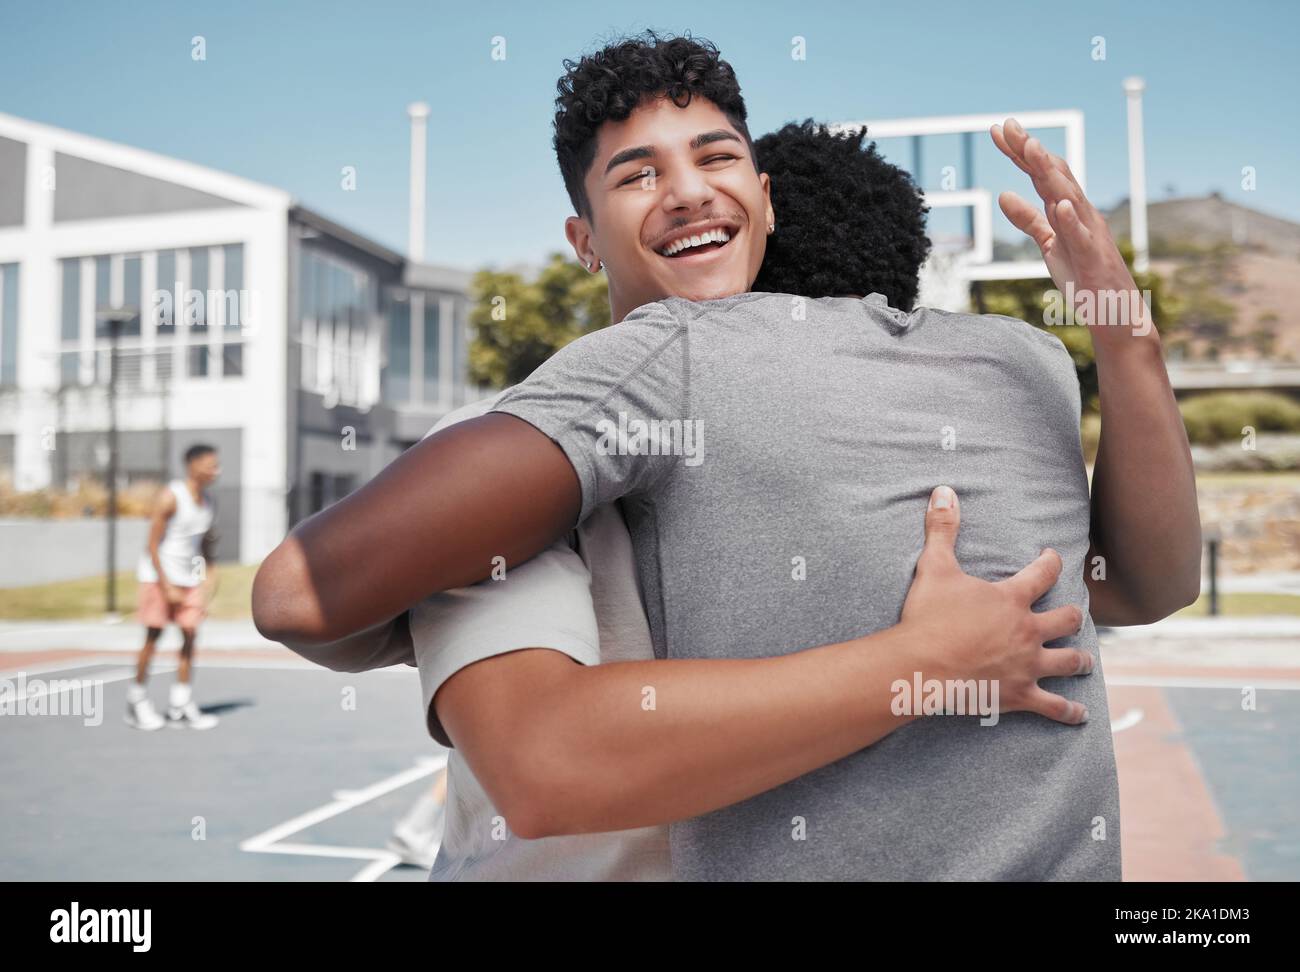 Le sport, les amis et l'homme se câlin pendant l'entraînement de basket-ball, heureux et sourire sur le terrain de basket-ball, excité et riant. Fitness, hommes et joueur de basket-ball Banque D'Images